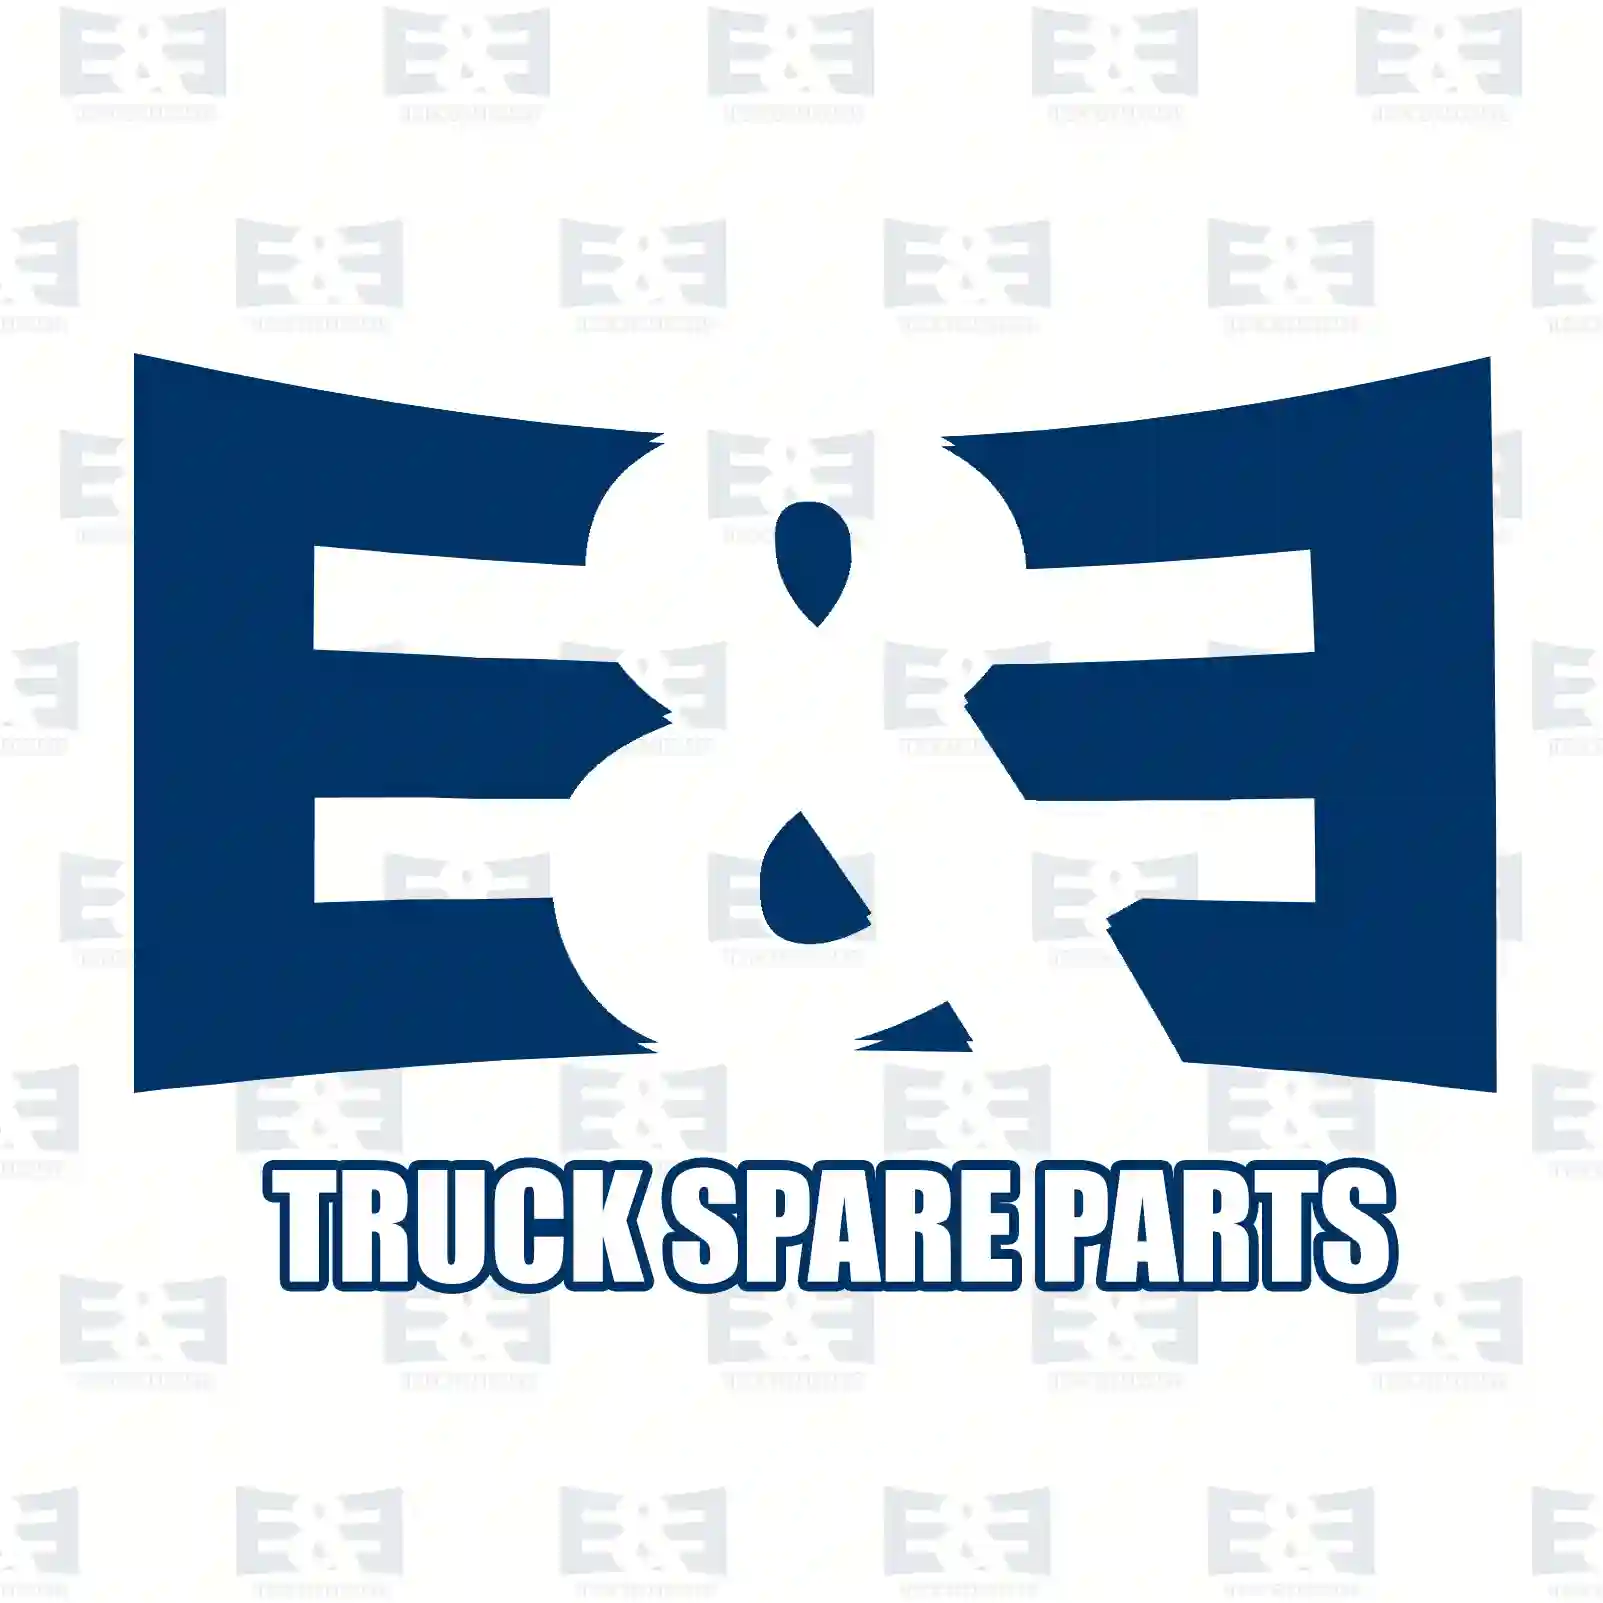 Wheel hub, with nut, 2E2284974, 1377912, 6C11-1A049-DA, , ||  2E2284974 E&E Truck Spare Parts | Truck Spare Parts, Auotomotive Spare Parts Wheel hub, with nut, 2E2284974, 1377912, 6C11-1A049-DA, , ||  2E2284974 E&E Truck Spare Parts | Truck Spare Parts, Auotomotive Spare Parts